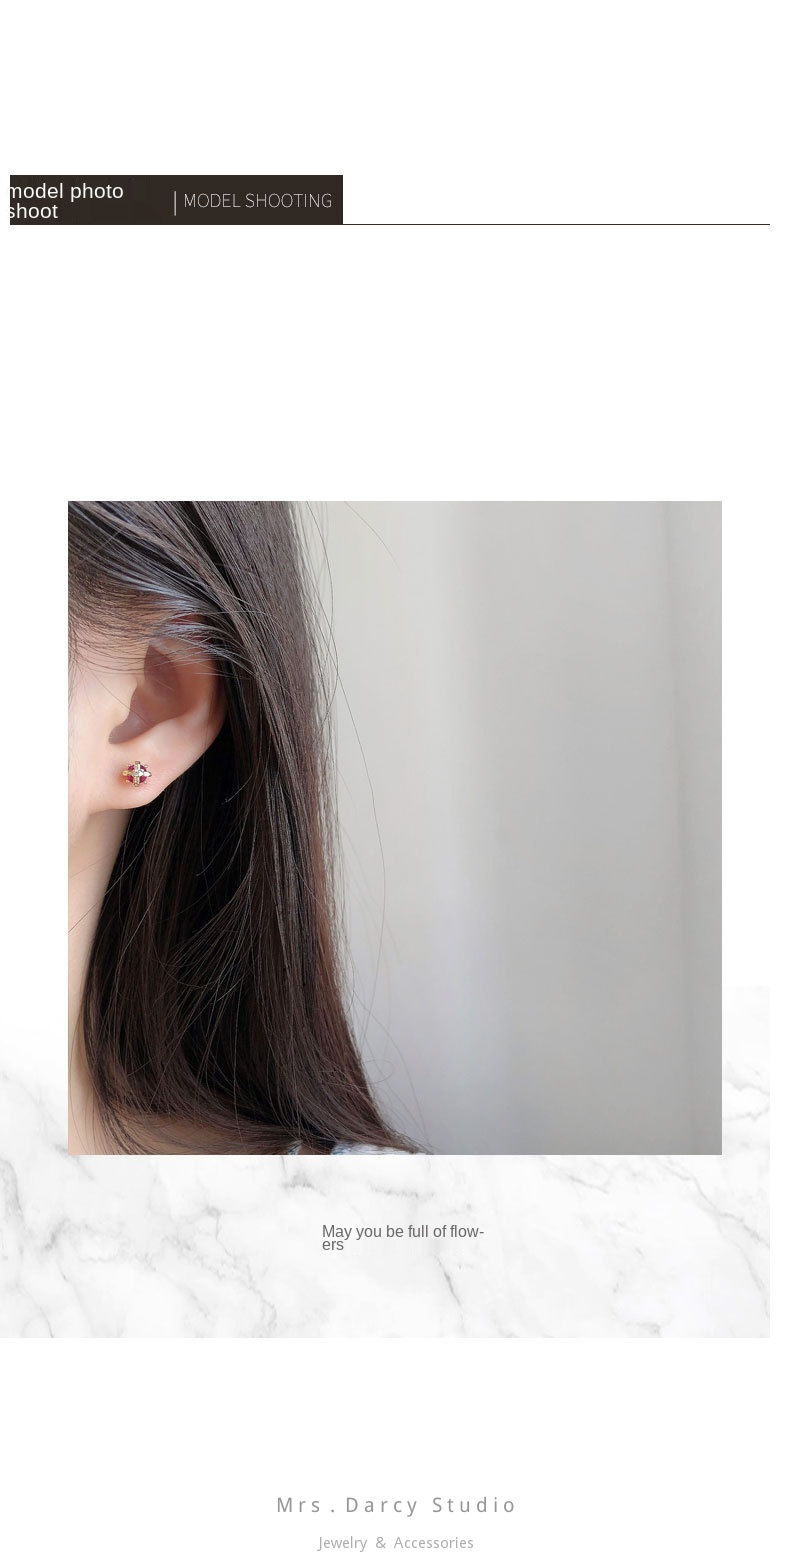 MRS.D【In Stock】100% Sterling Silver Queen's Crown S925 Earrings Stud Earrings Colors of Zircon Jewelry Gift Ear Clips Minimalist Earring Design Jewelry Girls Allergy Free